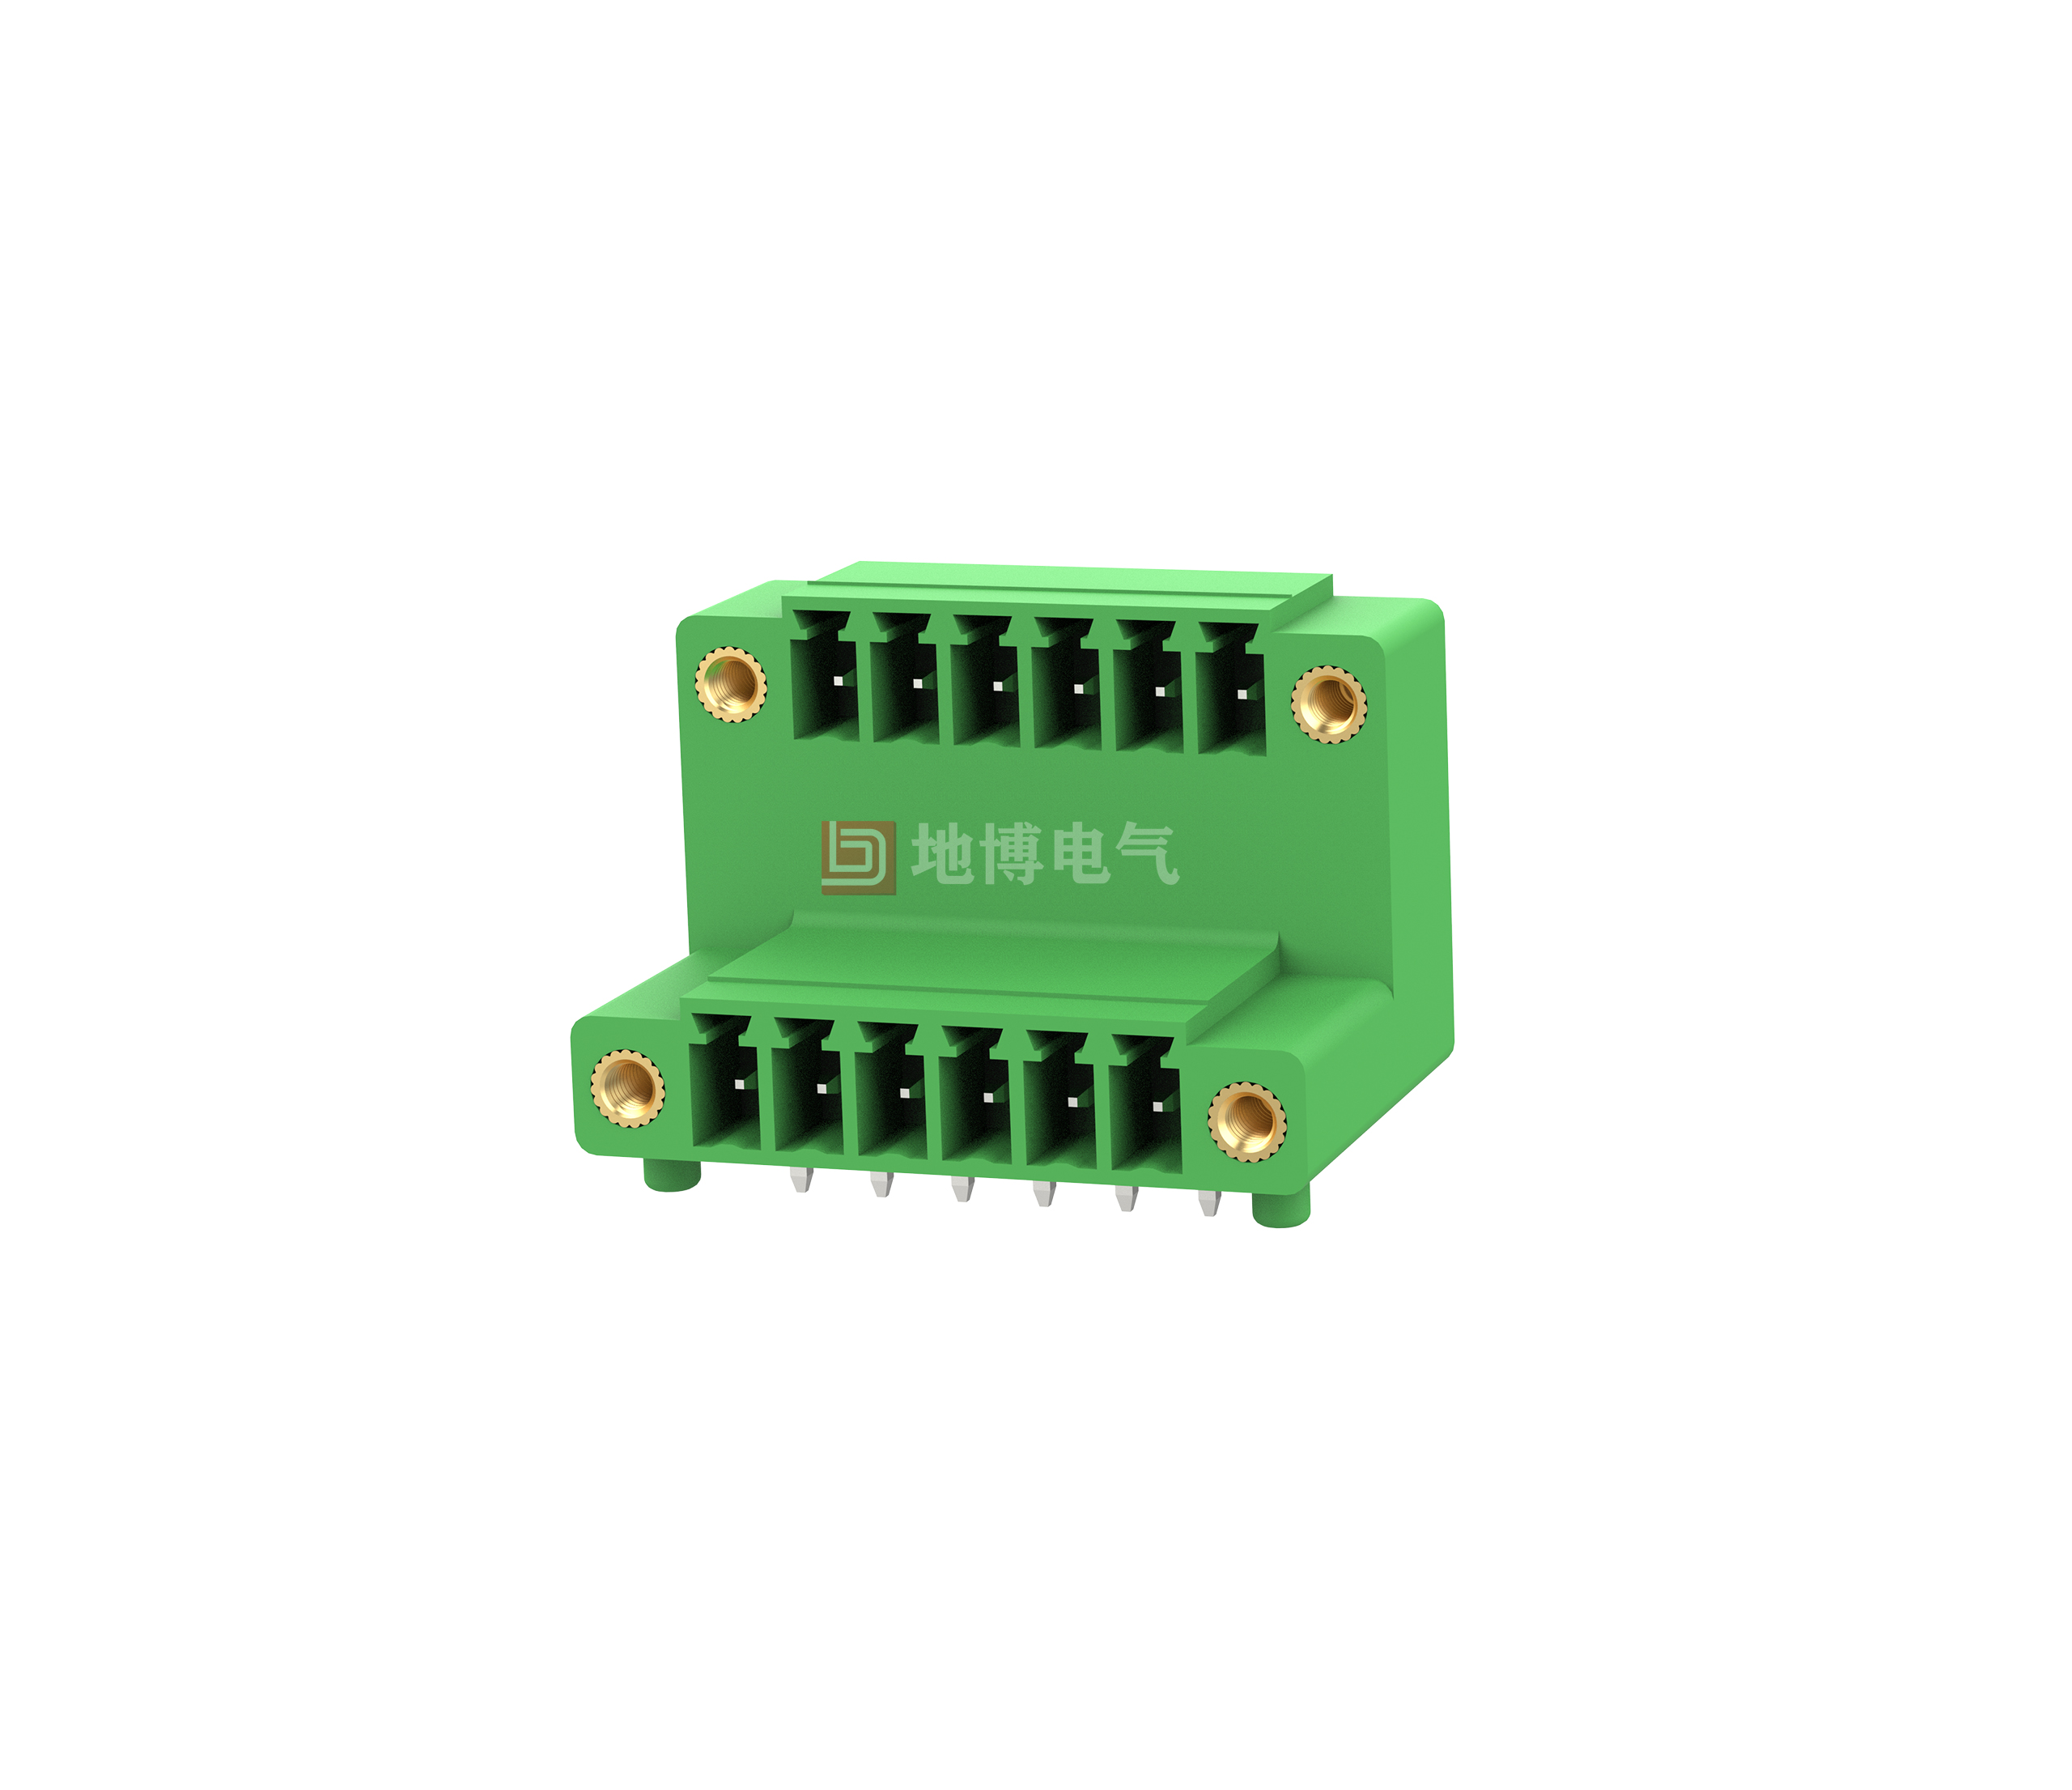 PCB socket DB2ERTM-3.81